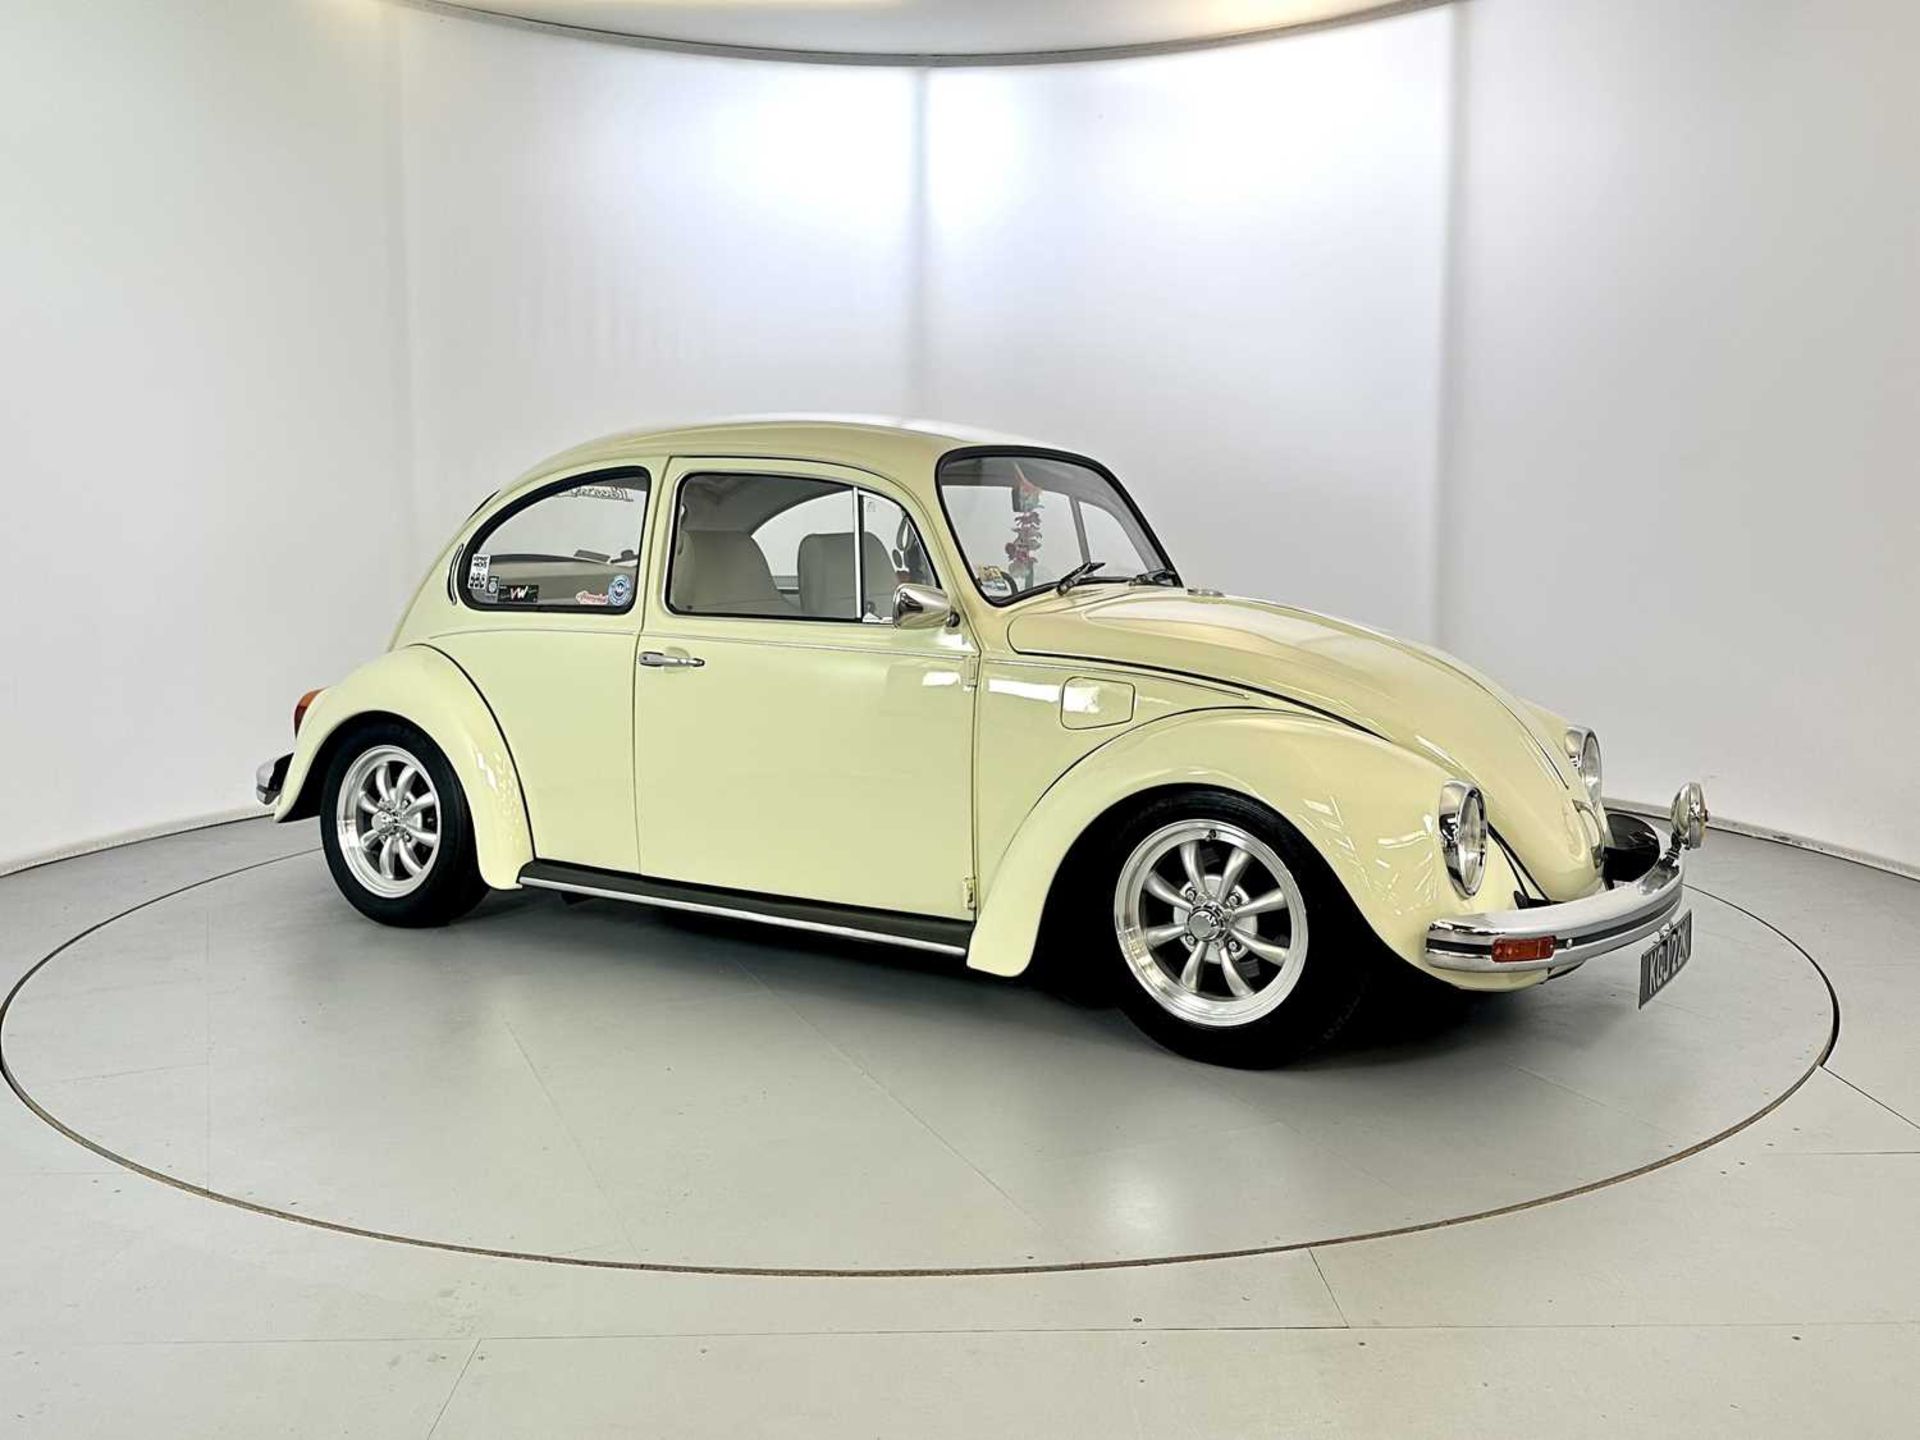 1971 Volkswagen Beetle - Image 12 of 30